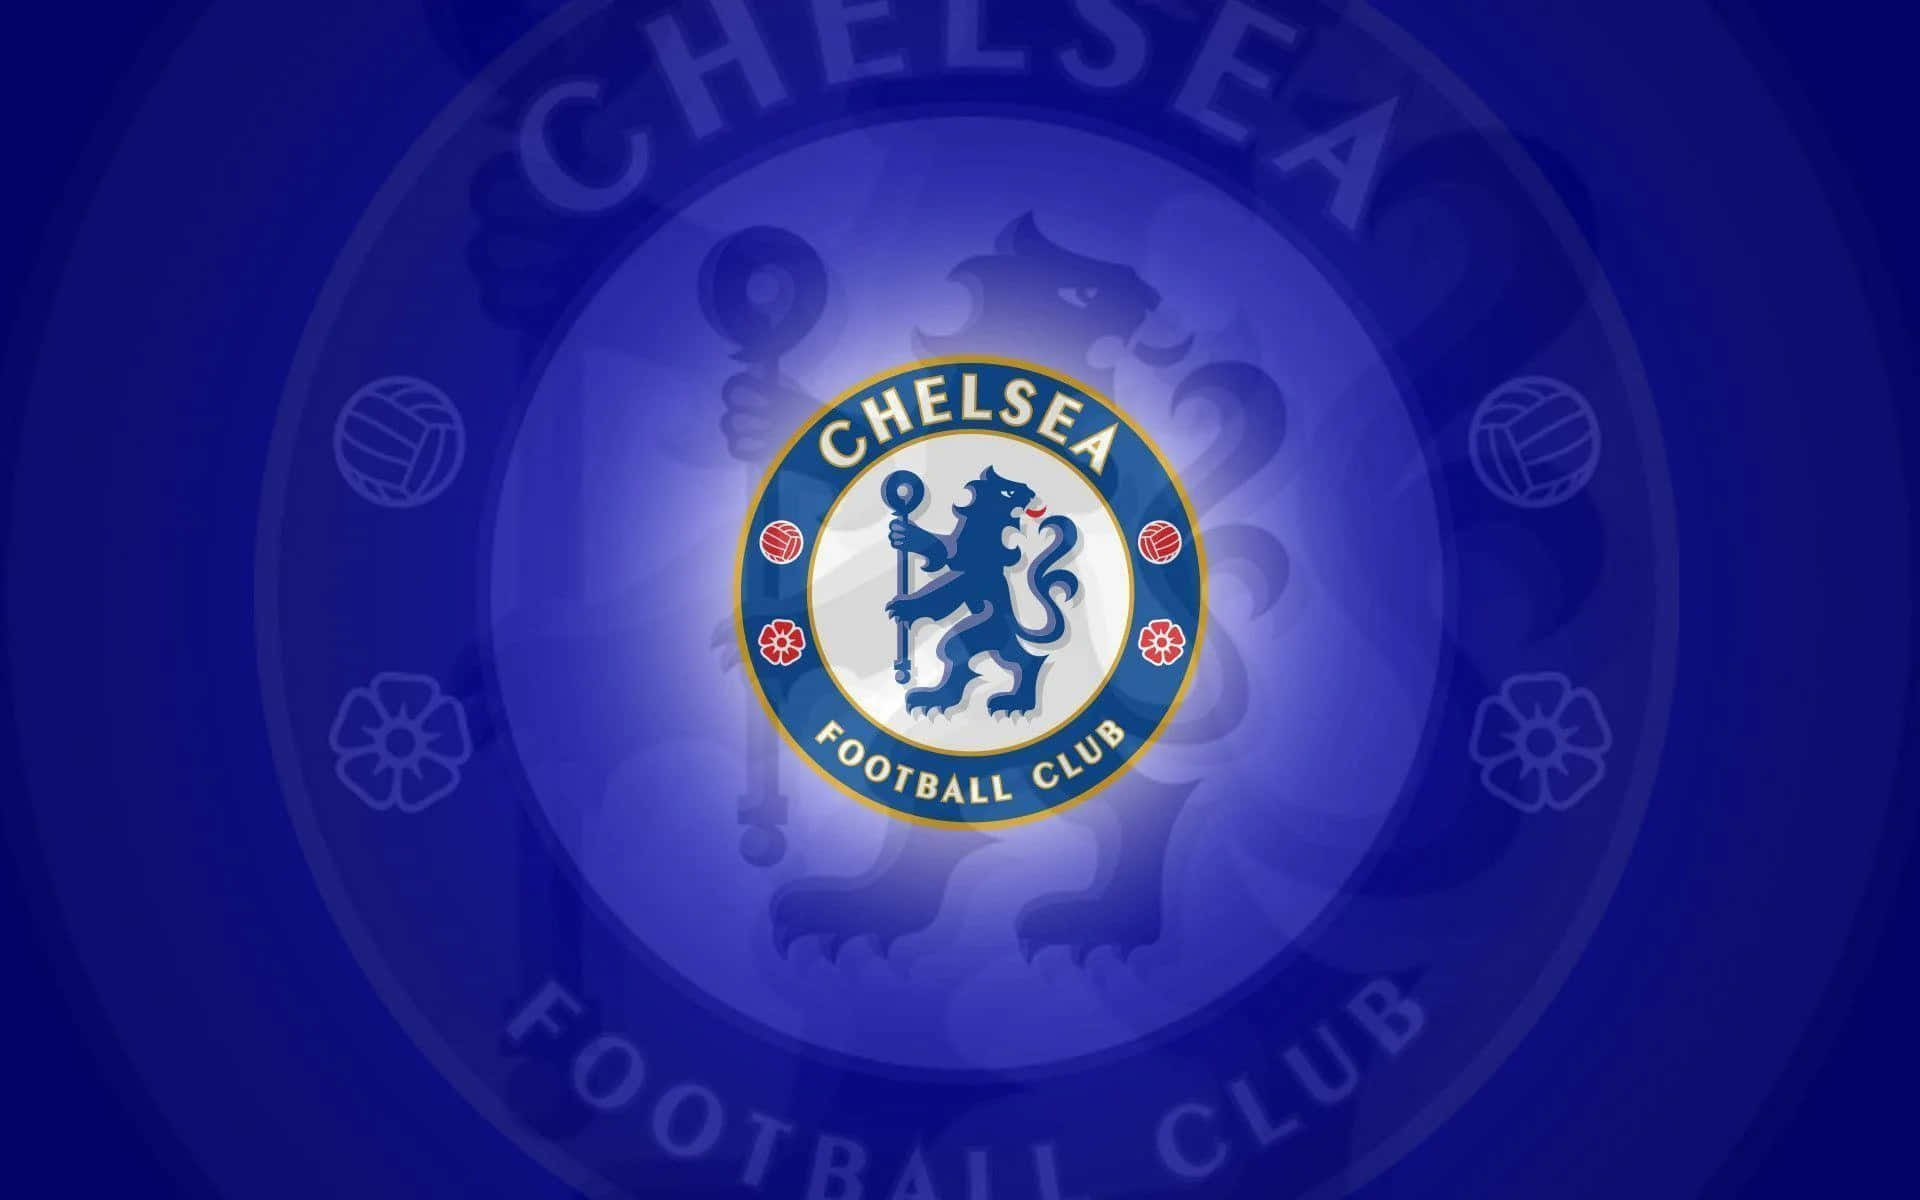 Muestratu Apoyo Al Chelsea Football Club